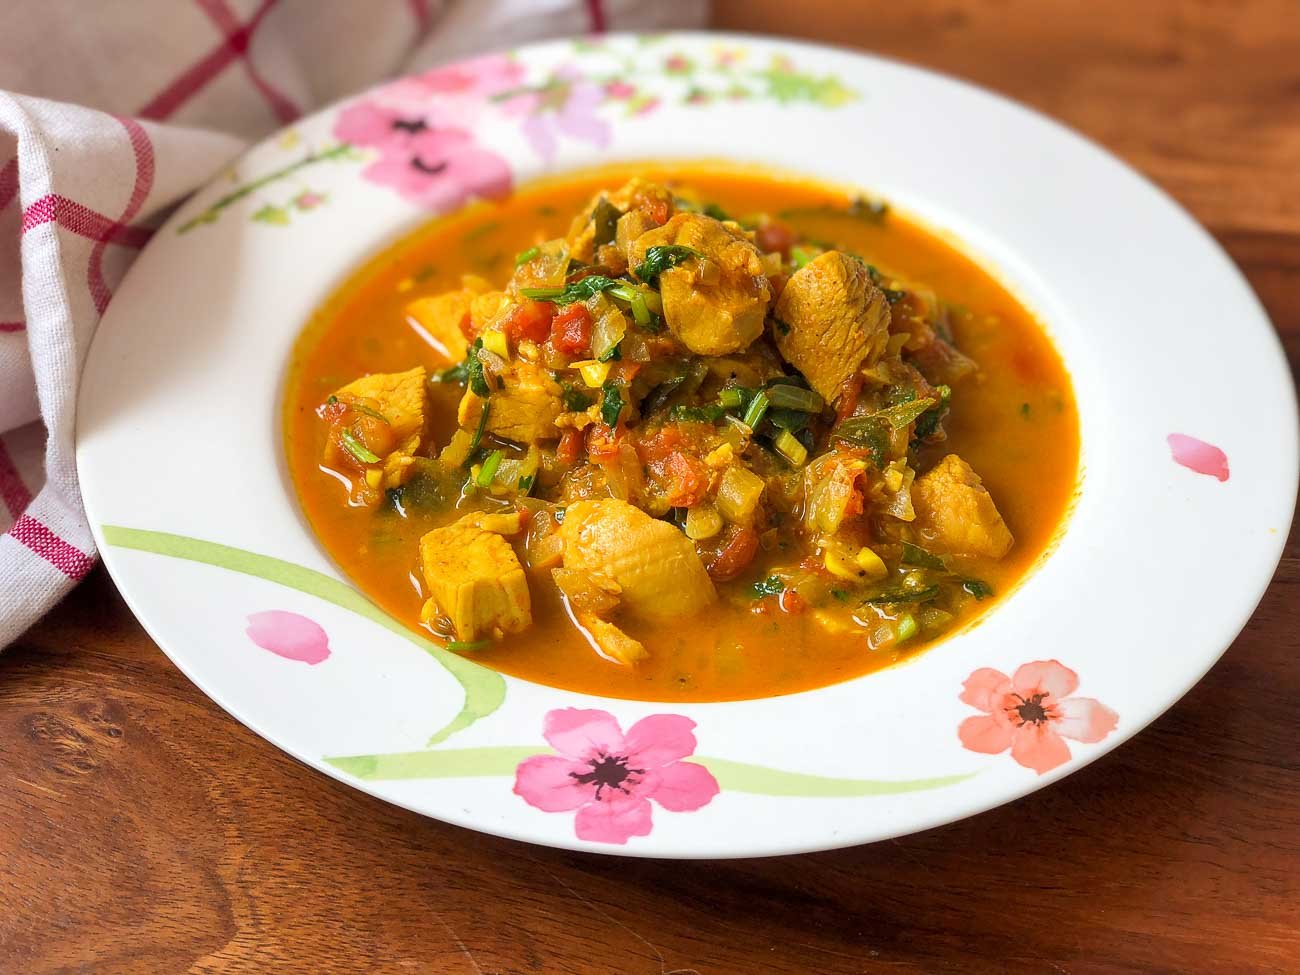 वन पॉट प्रेशर कुकर चिकन करी रेसिपी - One Pot Pressure Cooker Chicken Curry Recipe